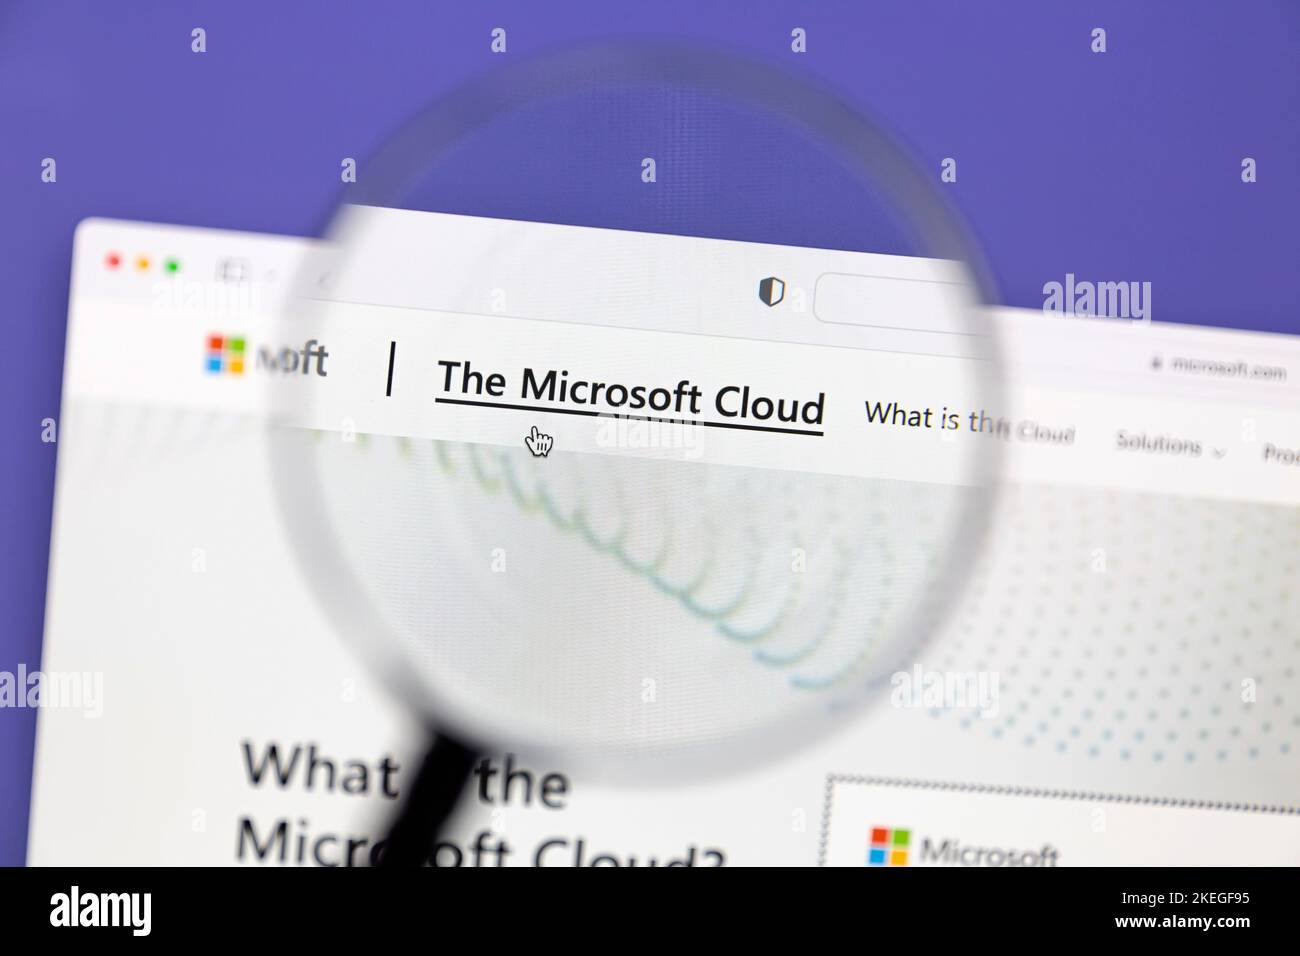 Ostersund, Schweden - 20. Sep 2022: Die Microsoft Cloud-Website auf einem Computerbildschirm. Microsoft Cloud ist eine Technologieplattform, die von Microsoft entwickelt wurde. Stockfoto